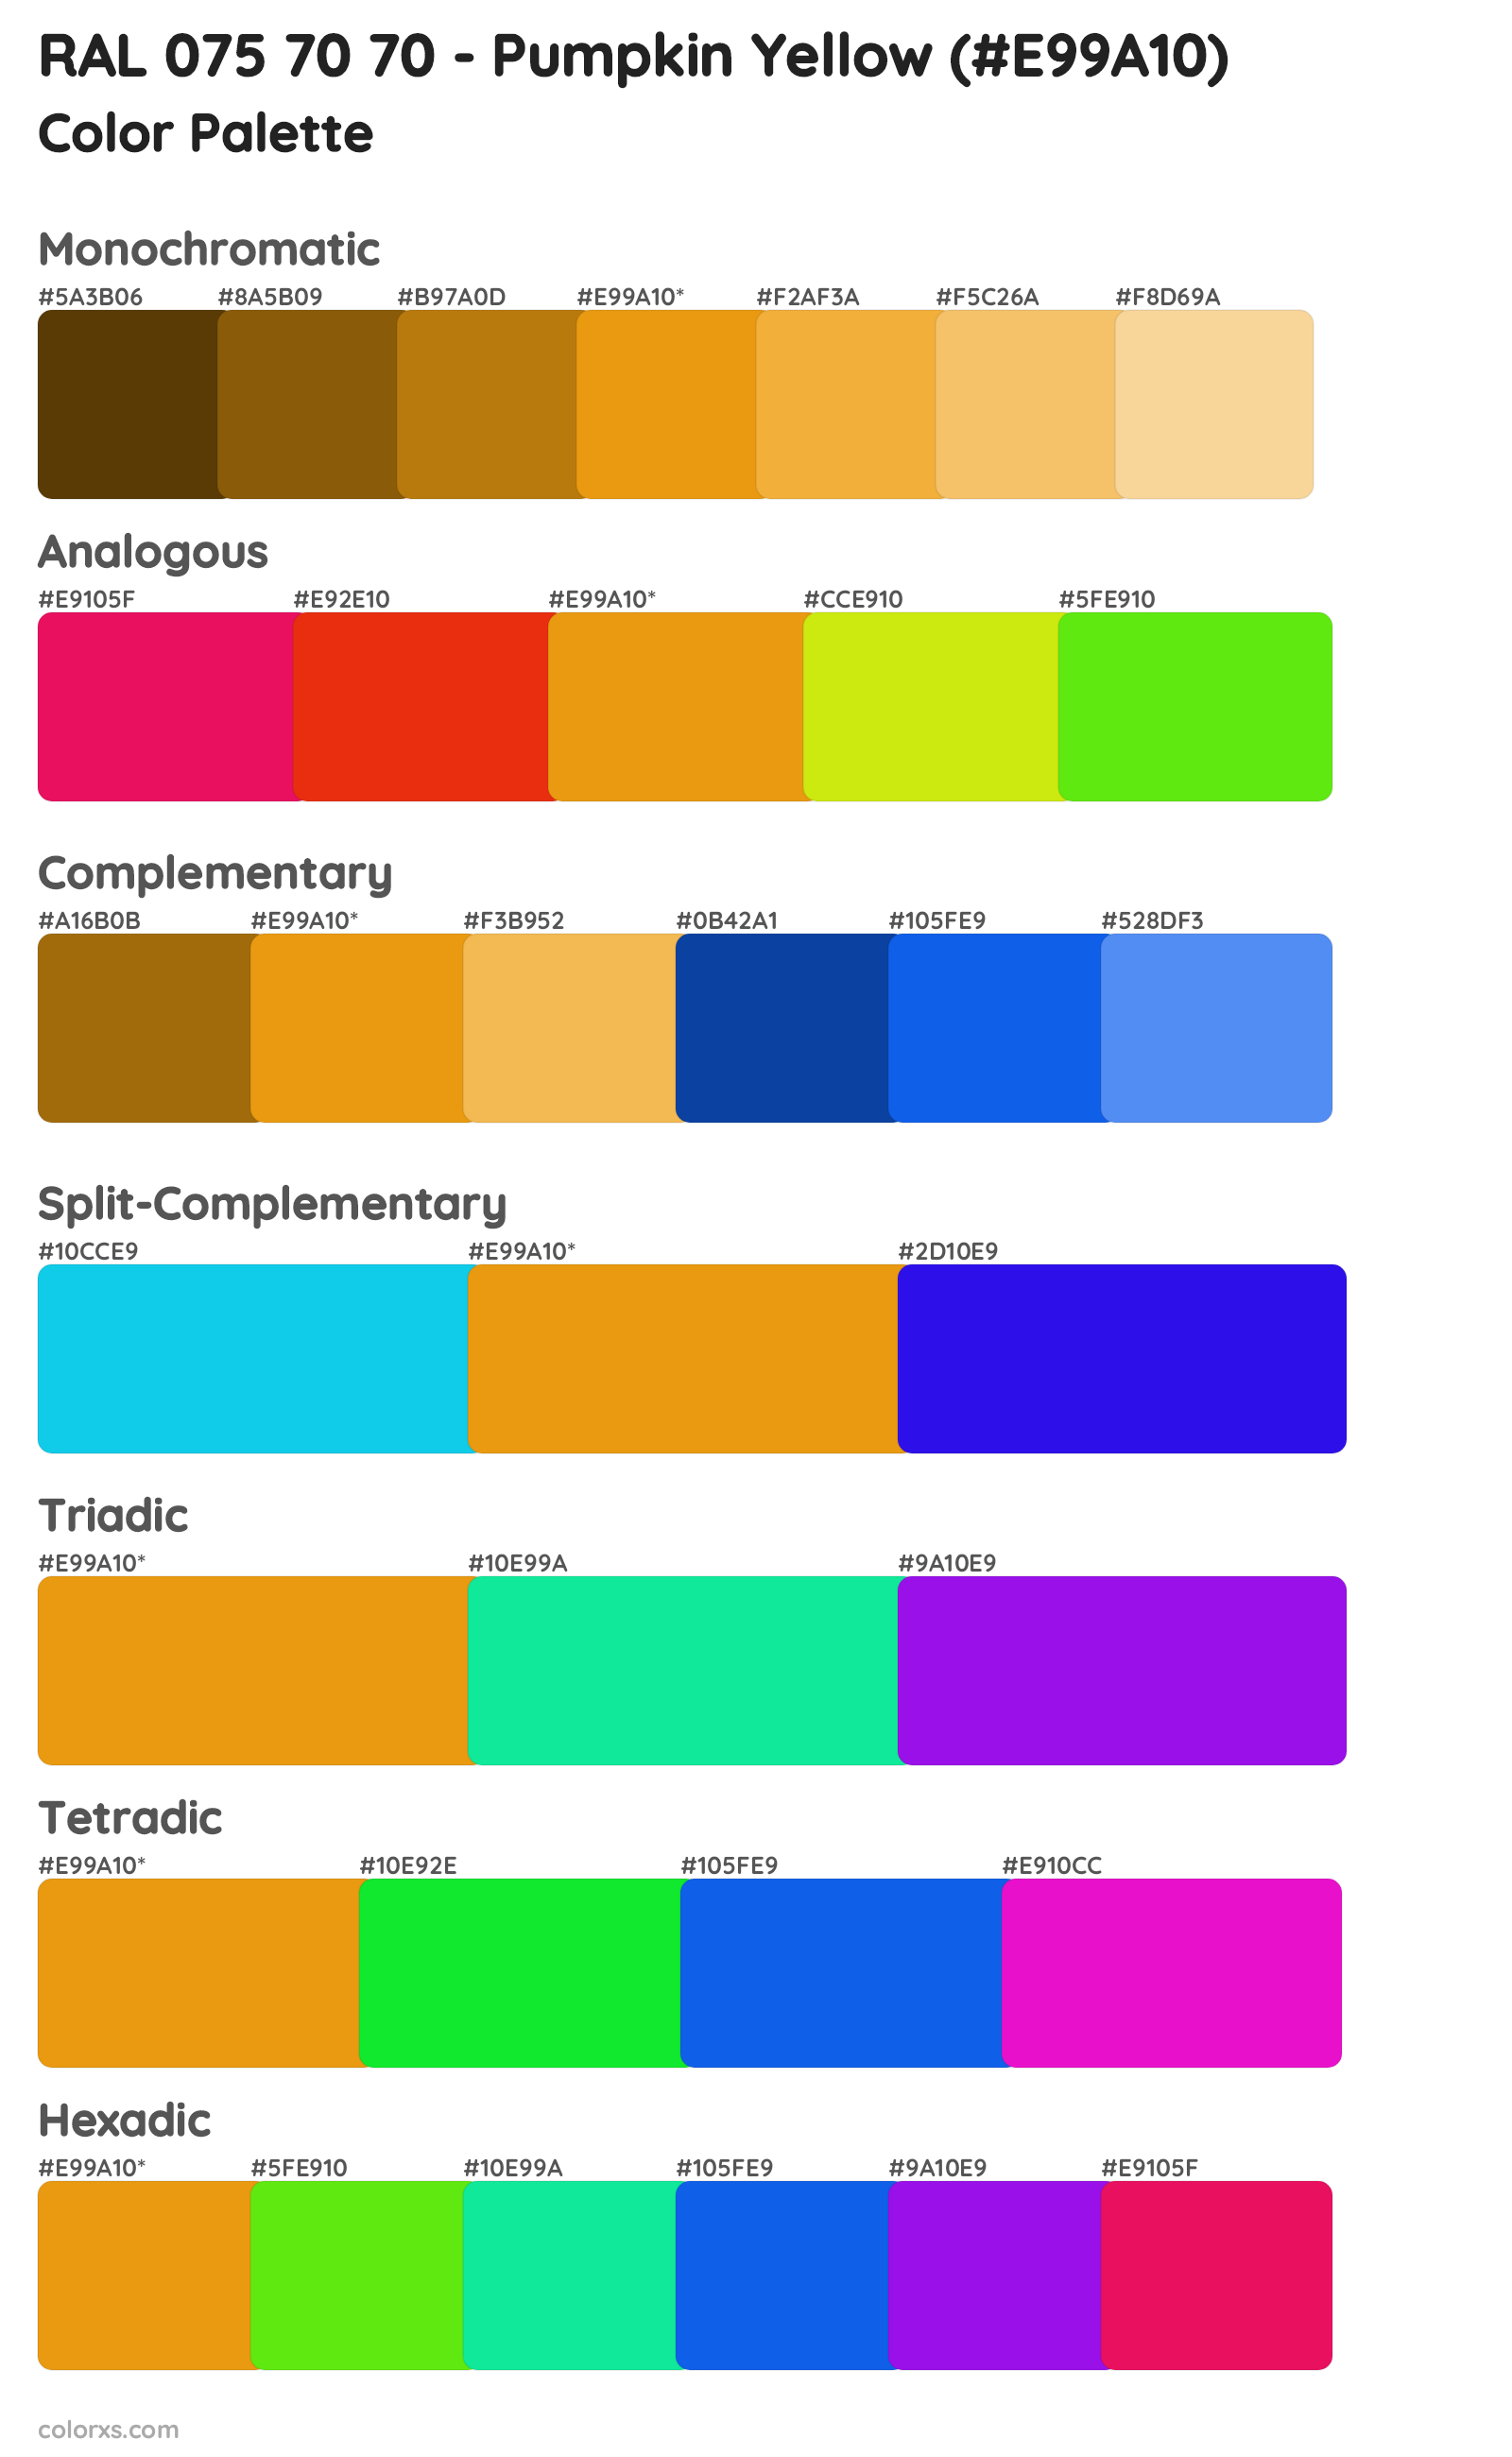 RAL 075 70 70 - Pumpkin Yellow Color Scheme Palettes